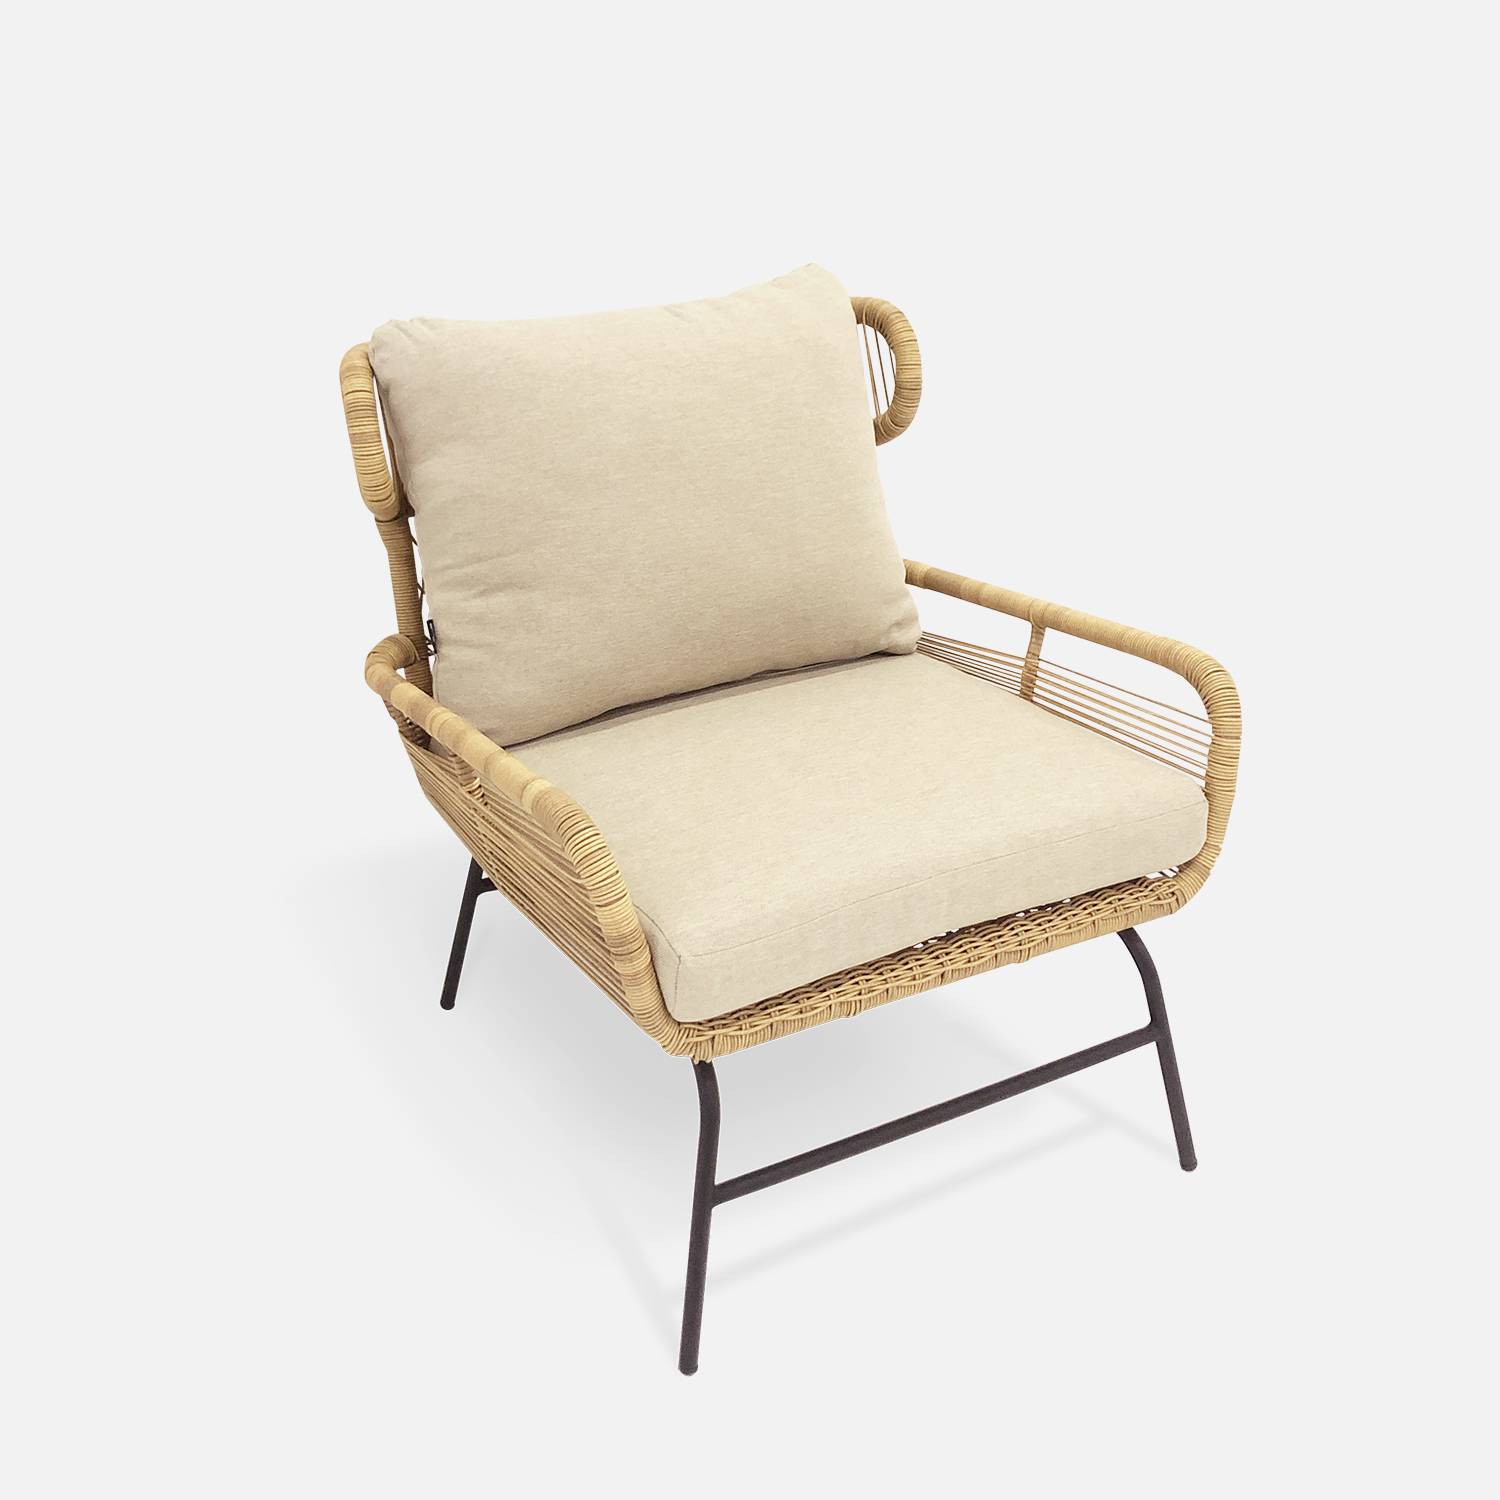 BALI niedrige Gartengarnitur 4 Sitze - Set Sofa mit 2 Sitzen und 2 Sesseln mit 1 ovaler Beistelltisch, Kunststoffrattan mit Rattan-Effekt, beigefarbene Kissen Photo4